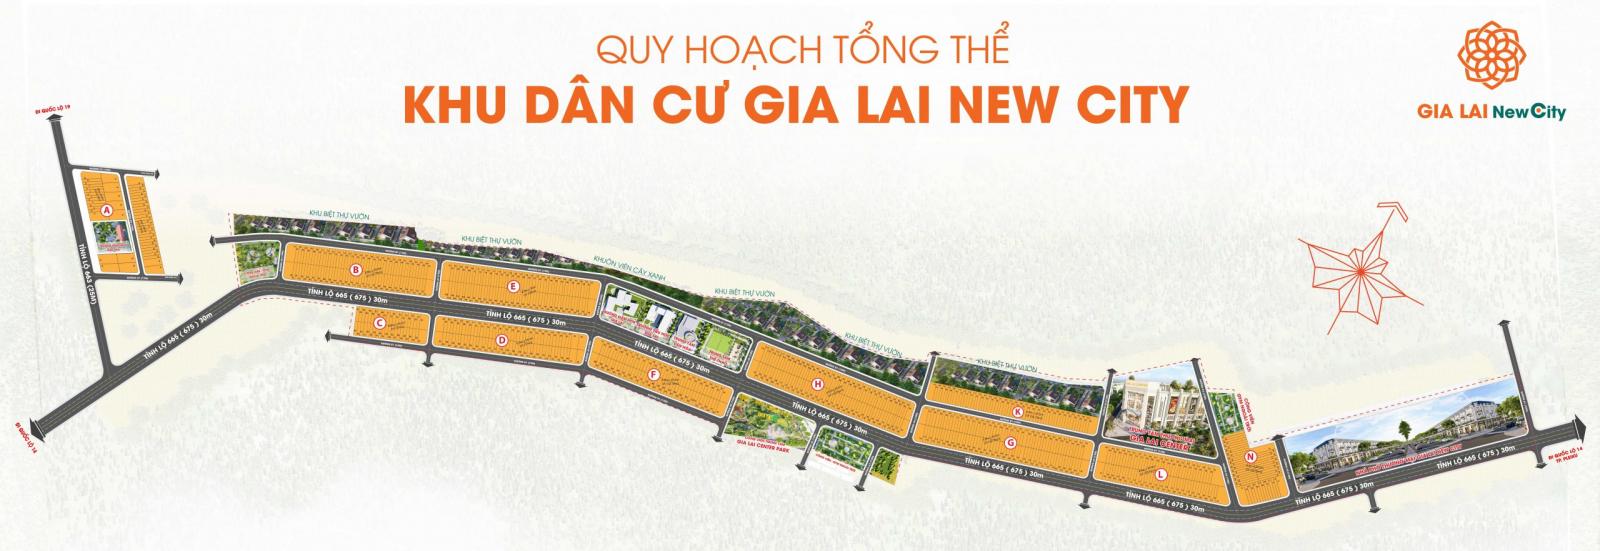 Gia Lai New City